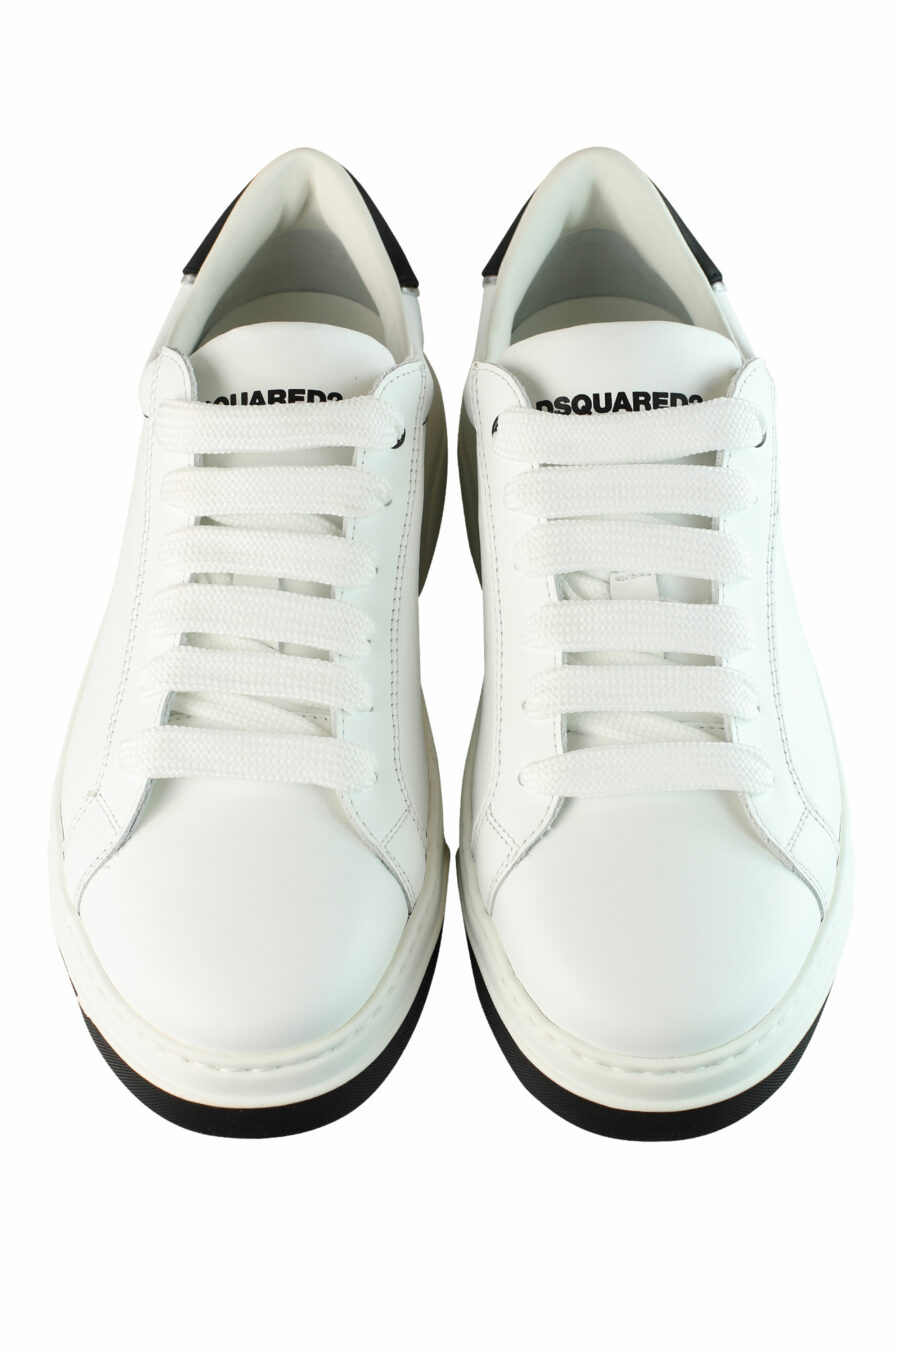 Zapatillas blancas "bumper" con detalles negros y logo - IMG 1370